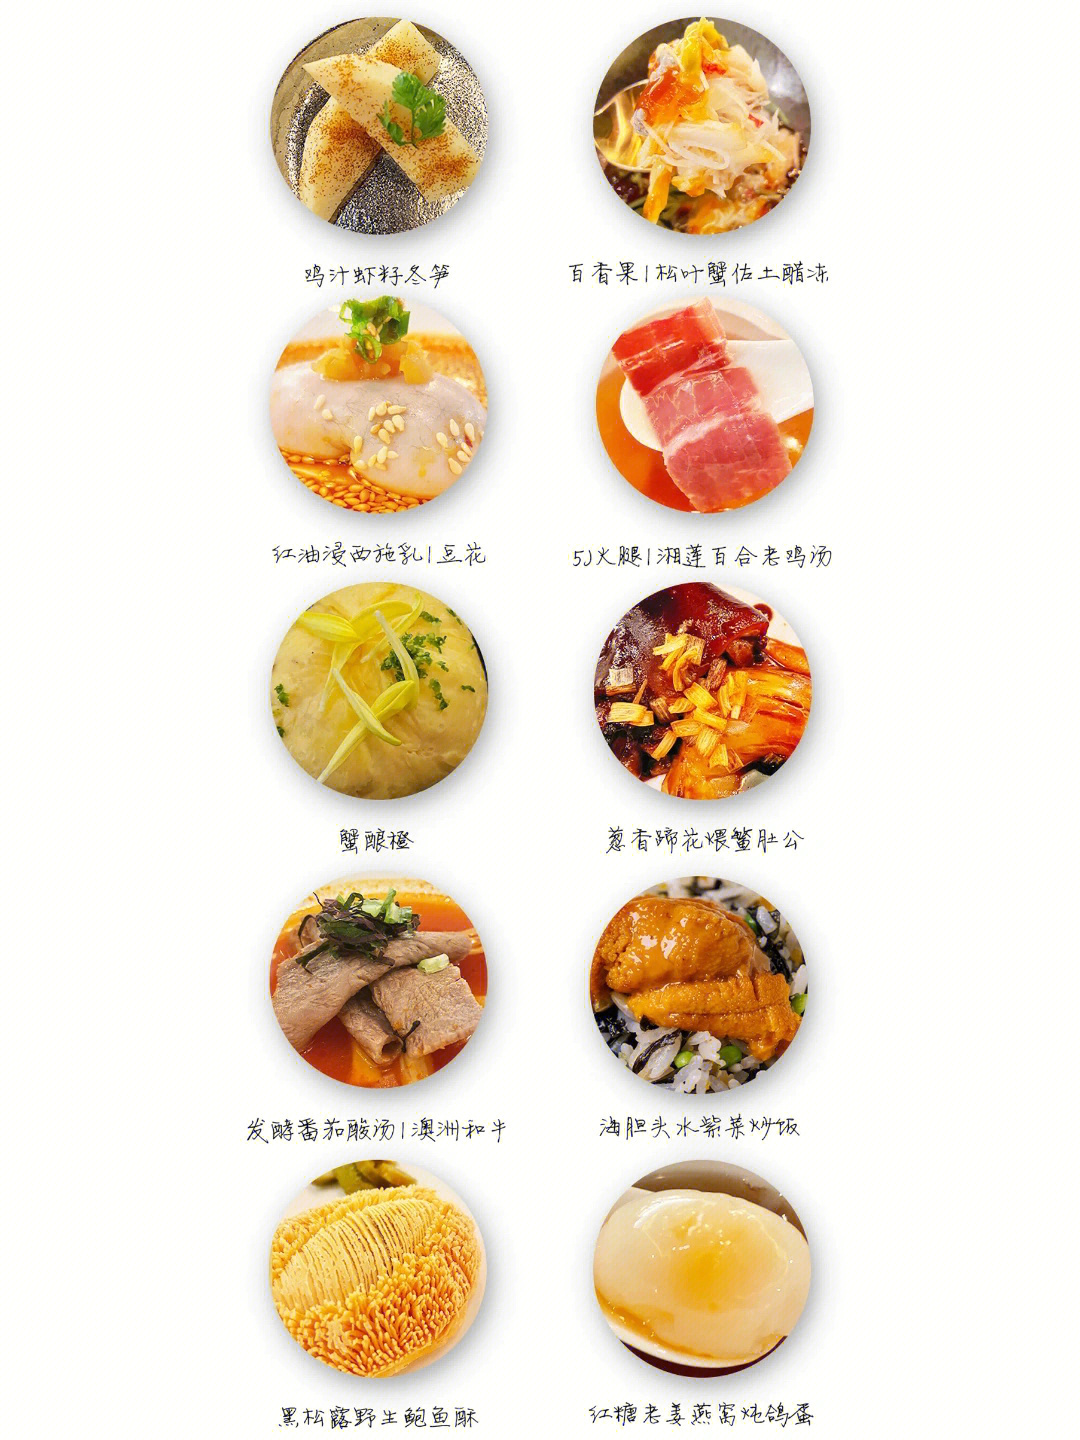 青岛米其林餐厅名单图片